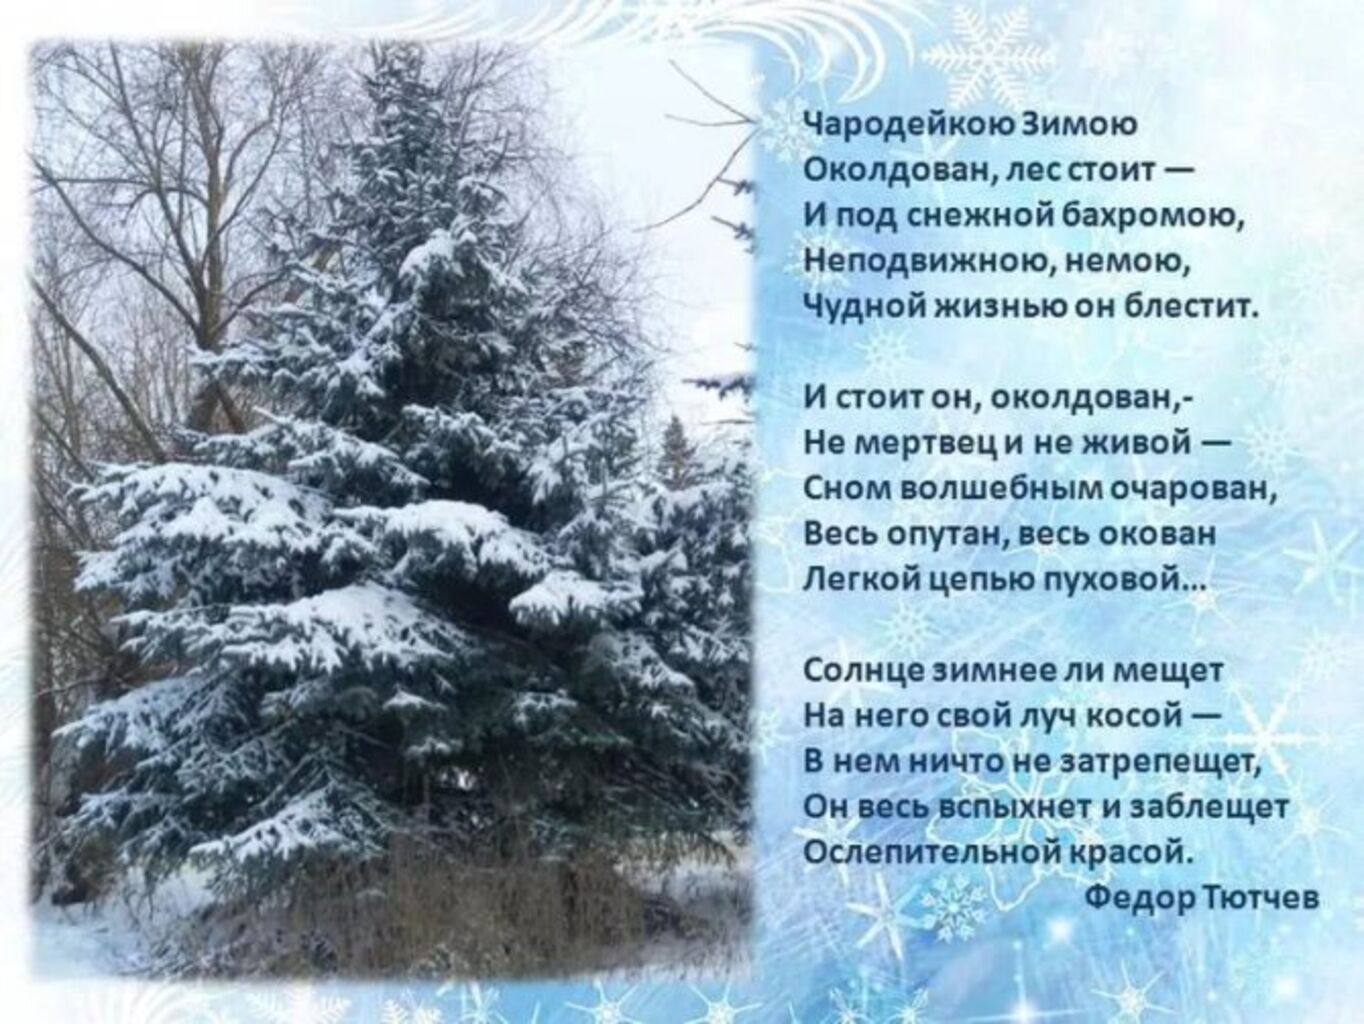 Фёдор Тютчев стихотворение Чародейкою зимою